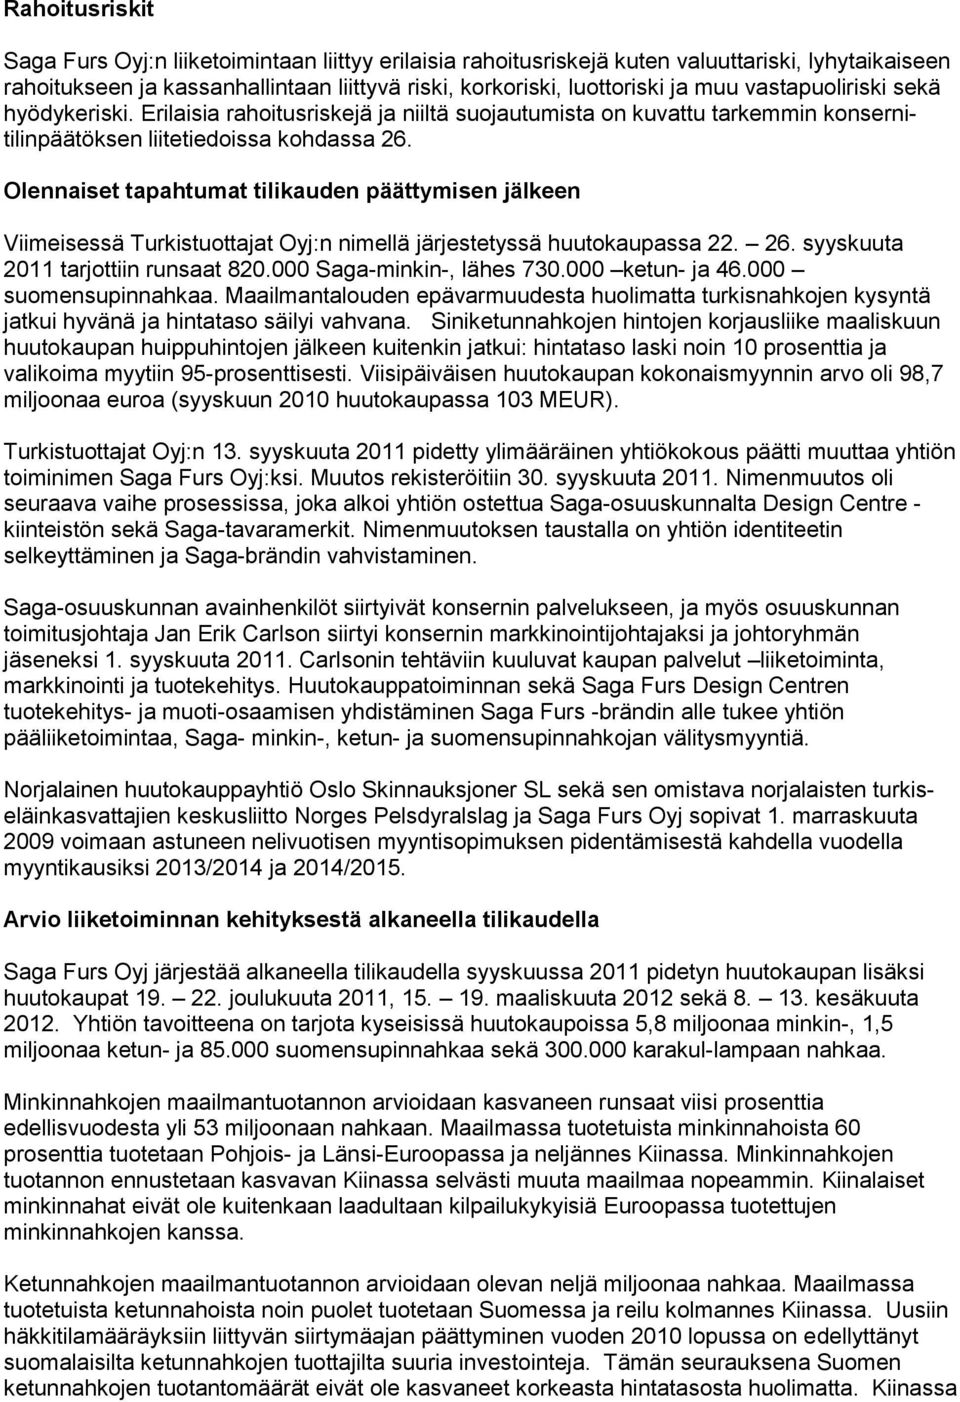 Olennaiset tapahtumat tilikauden päättymisen jälkeen Viimeisessä Turkistuottajat Oyj:n nimellä järjestetyssä huutokaupassa 22. 26. syyskuuta 2011 tarjottiin runsaat 820.000 Saga-minkin-, lähes 730.